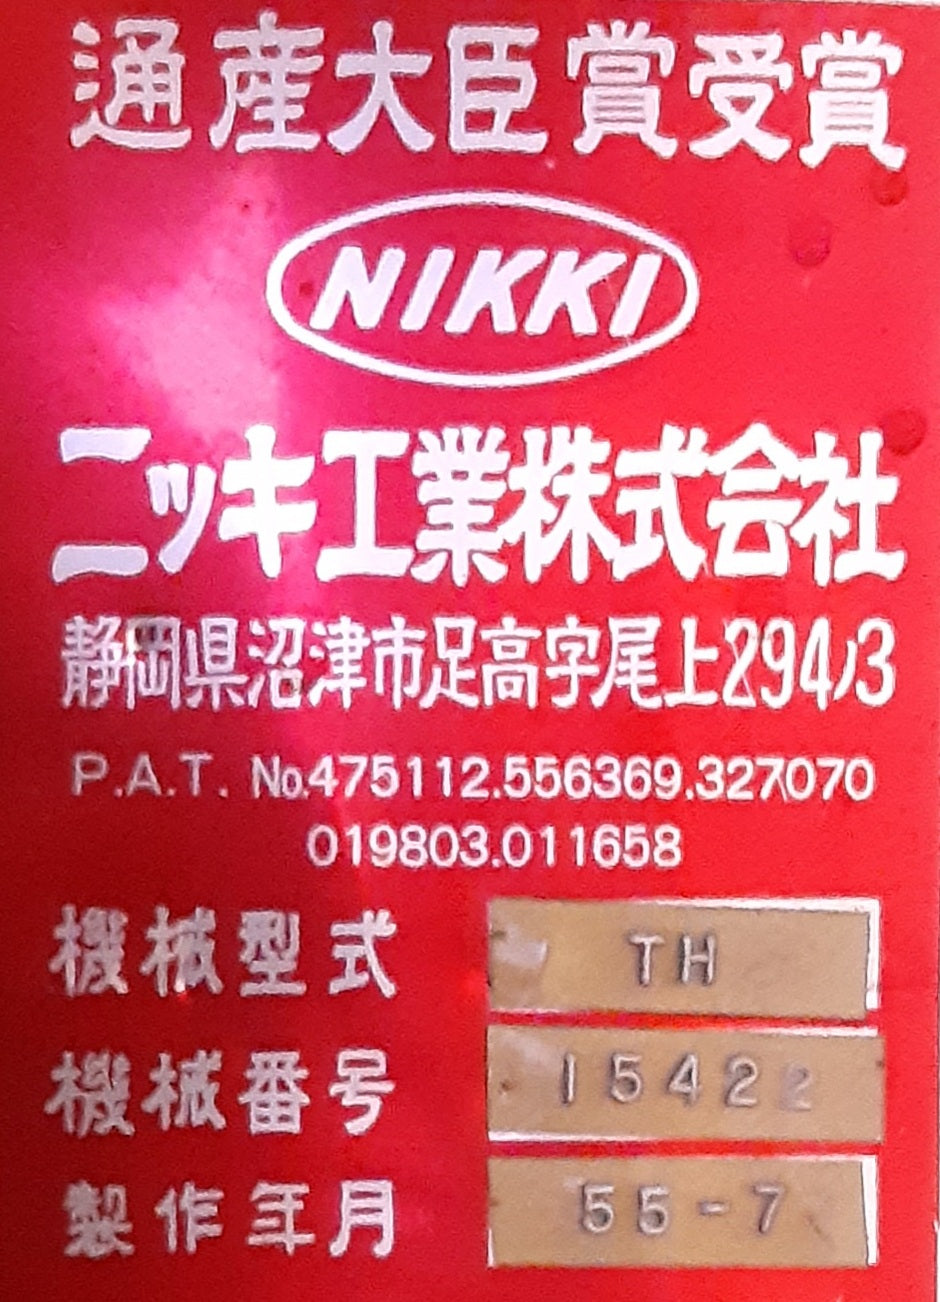 ニッキ工業(NIKKI)製 電動式 箱隅テープ留め機 (箱の角にテープを貼る機械)